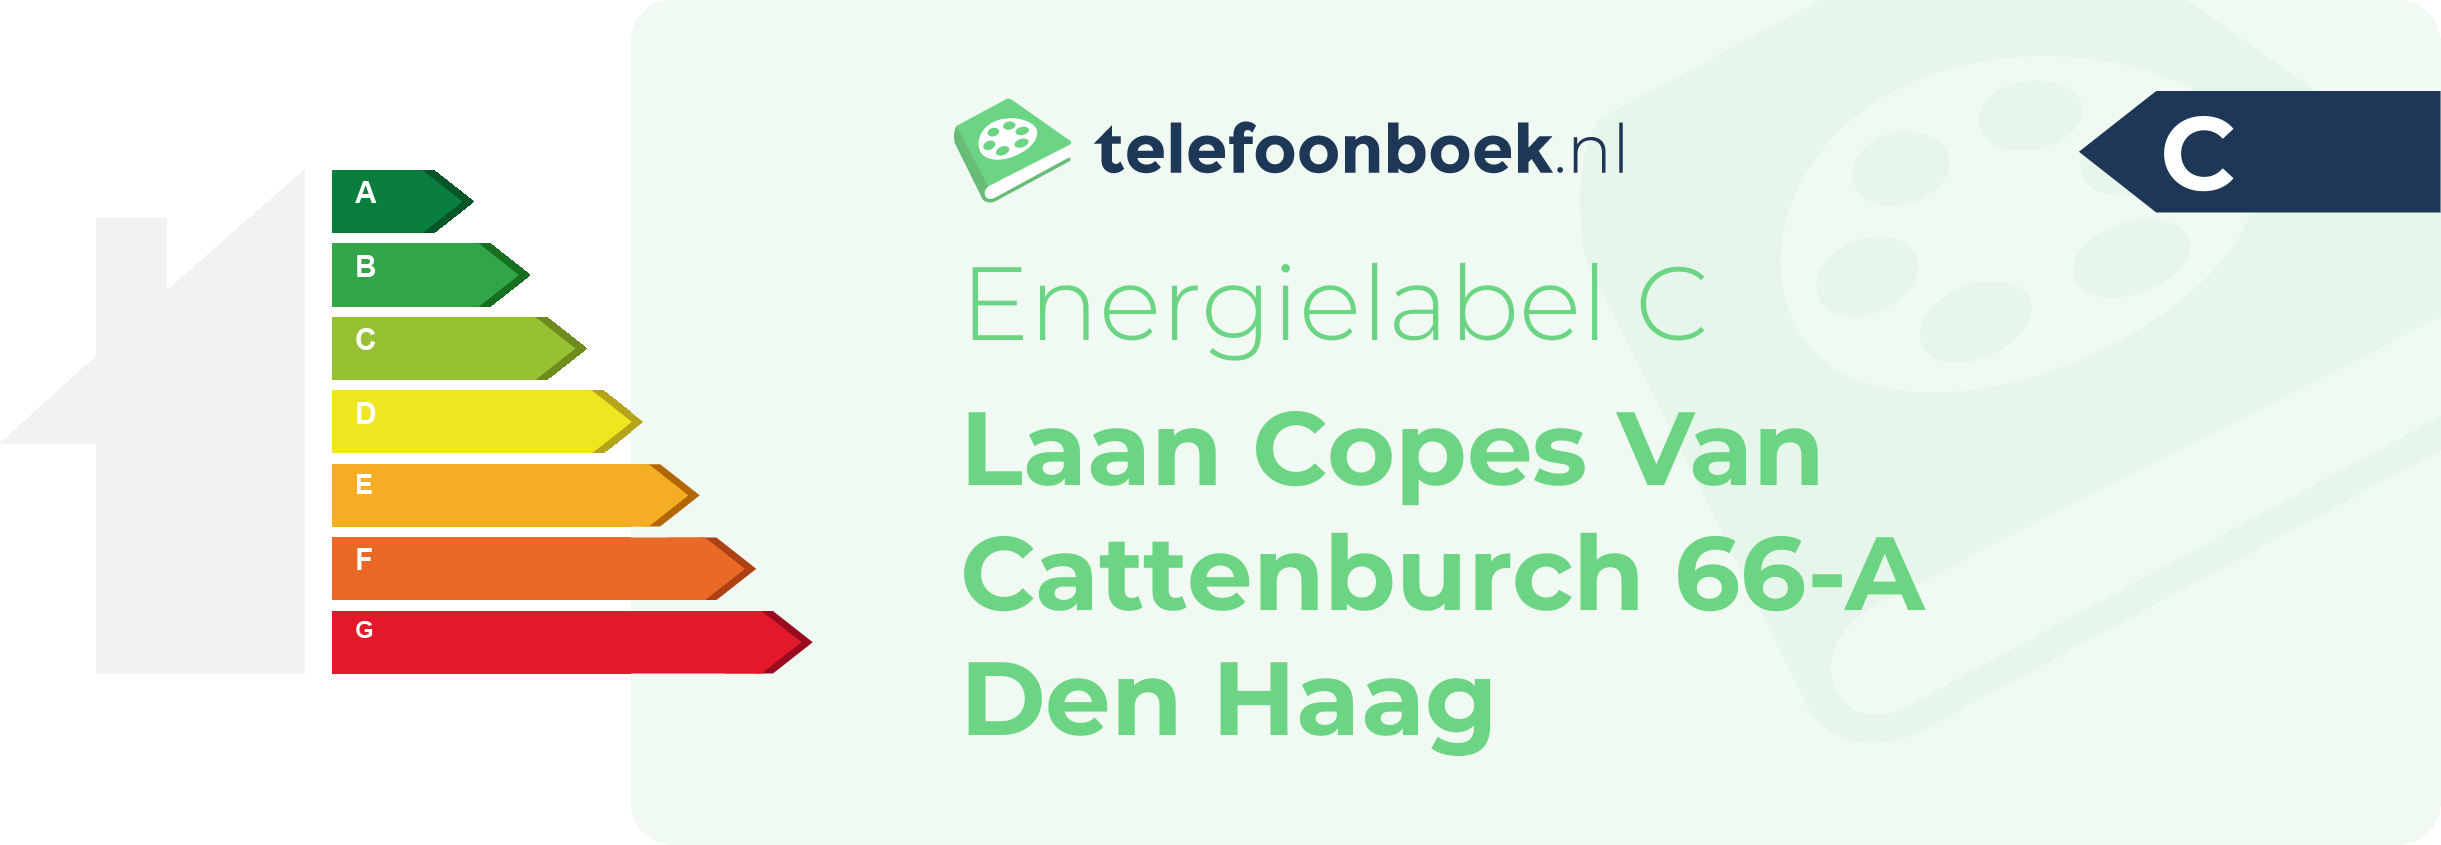 Energielabel Laan Copes Van Cattenburch 66-A Den Haag